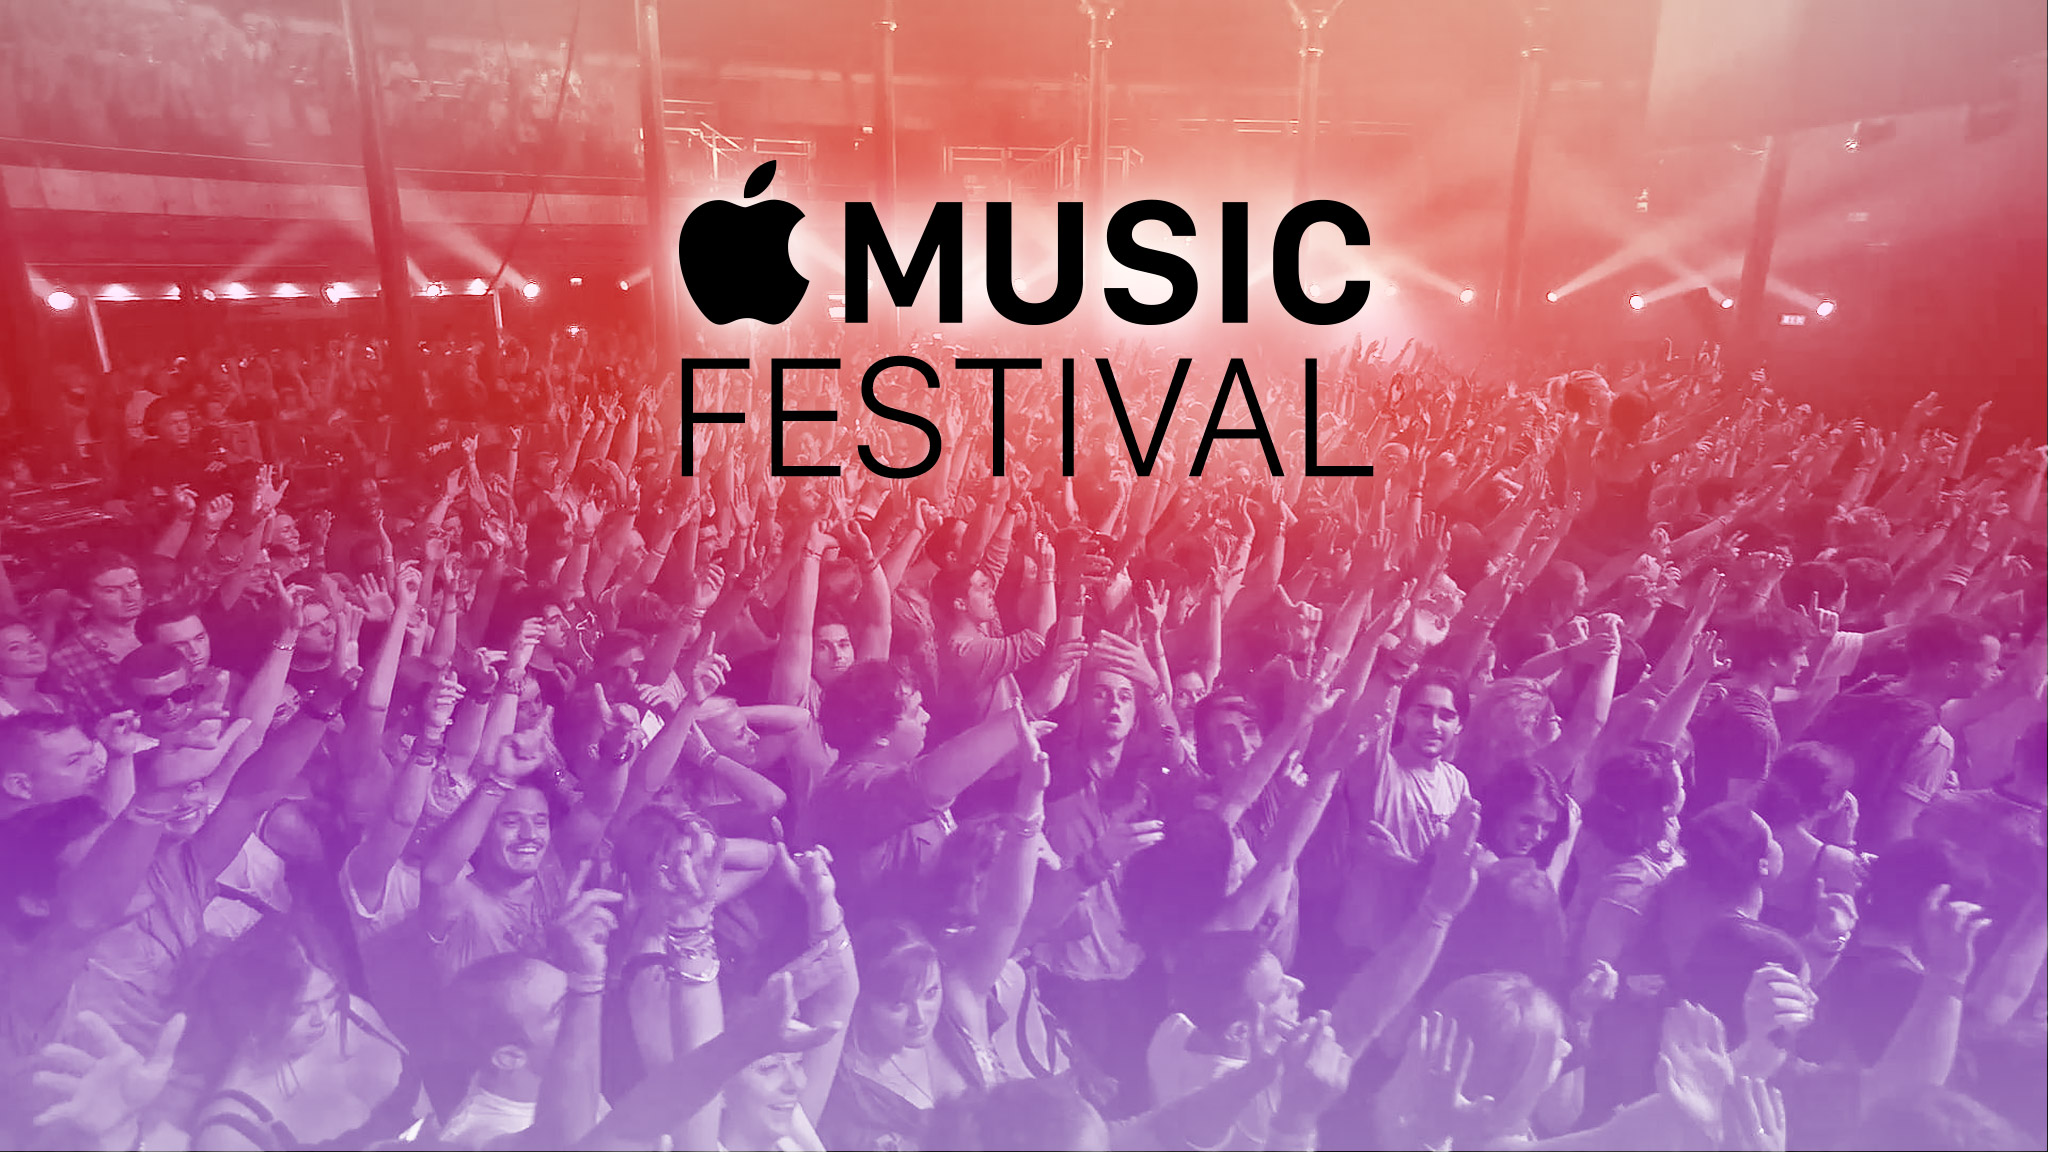 El festival Apple Music fue cancelado luego de 10 años